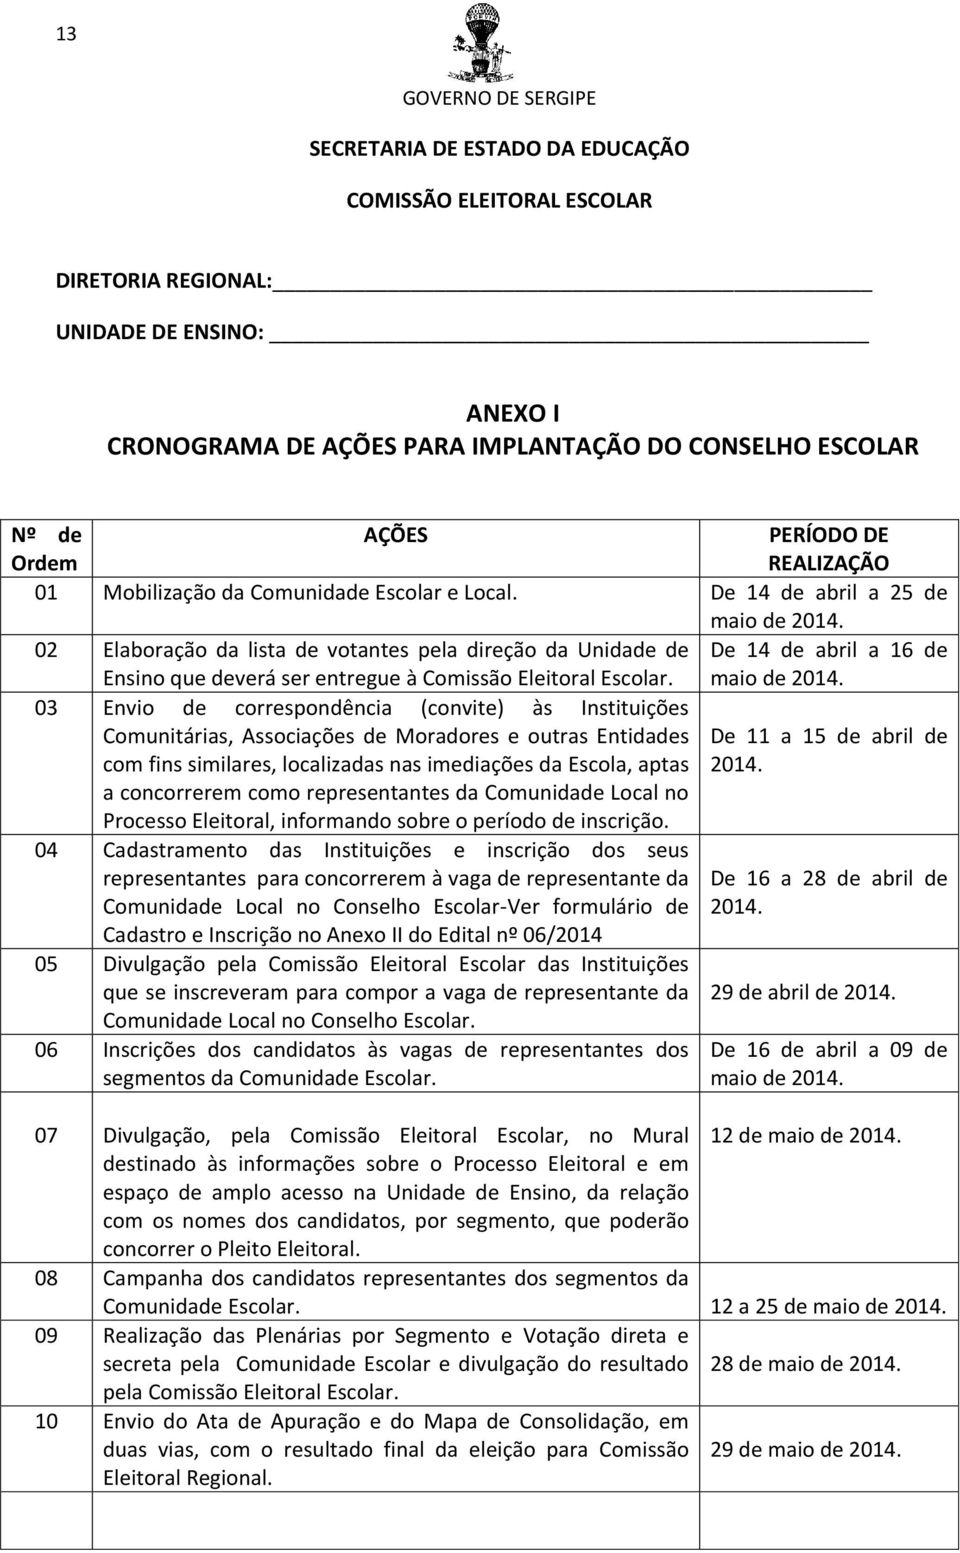 02 Elaboração da lista de votantes pela direção da Unidade de Ensino que deverá ser entregue à Comissão Eleitoral Escolar. De 14 de abril a 16 de maio de 2014.